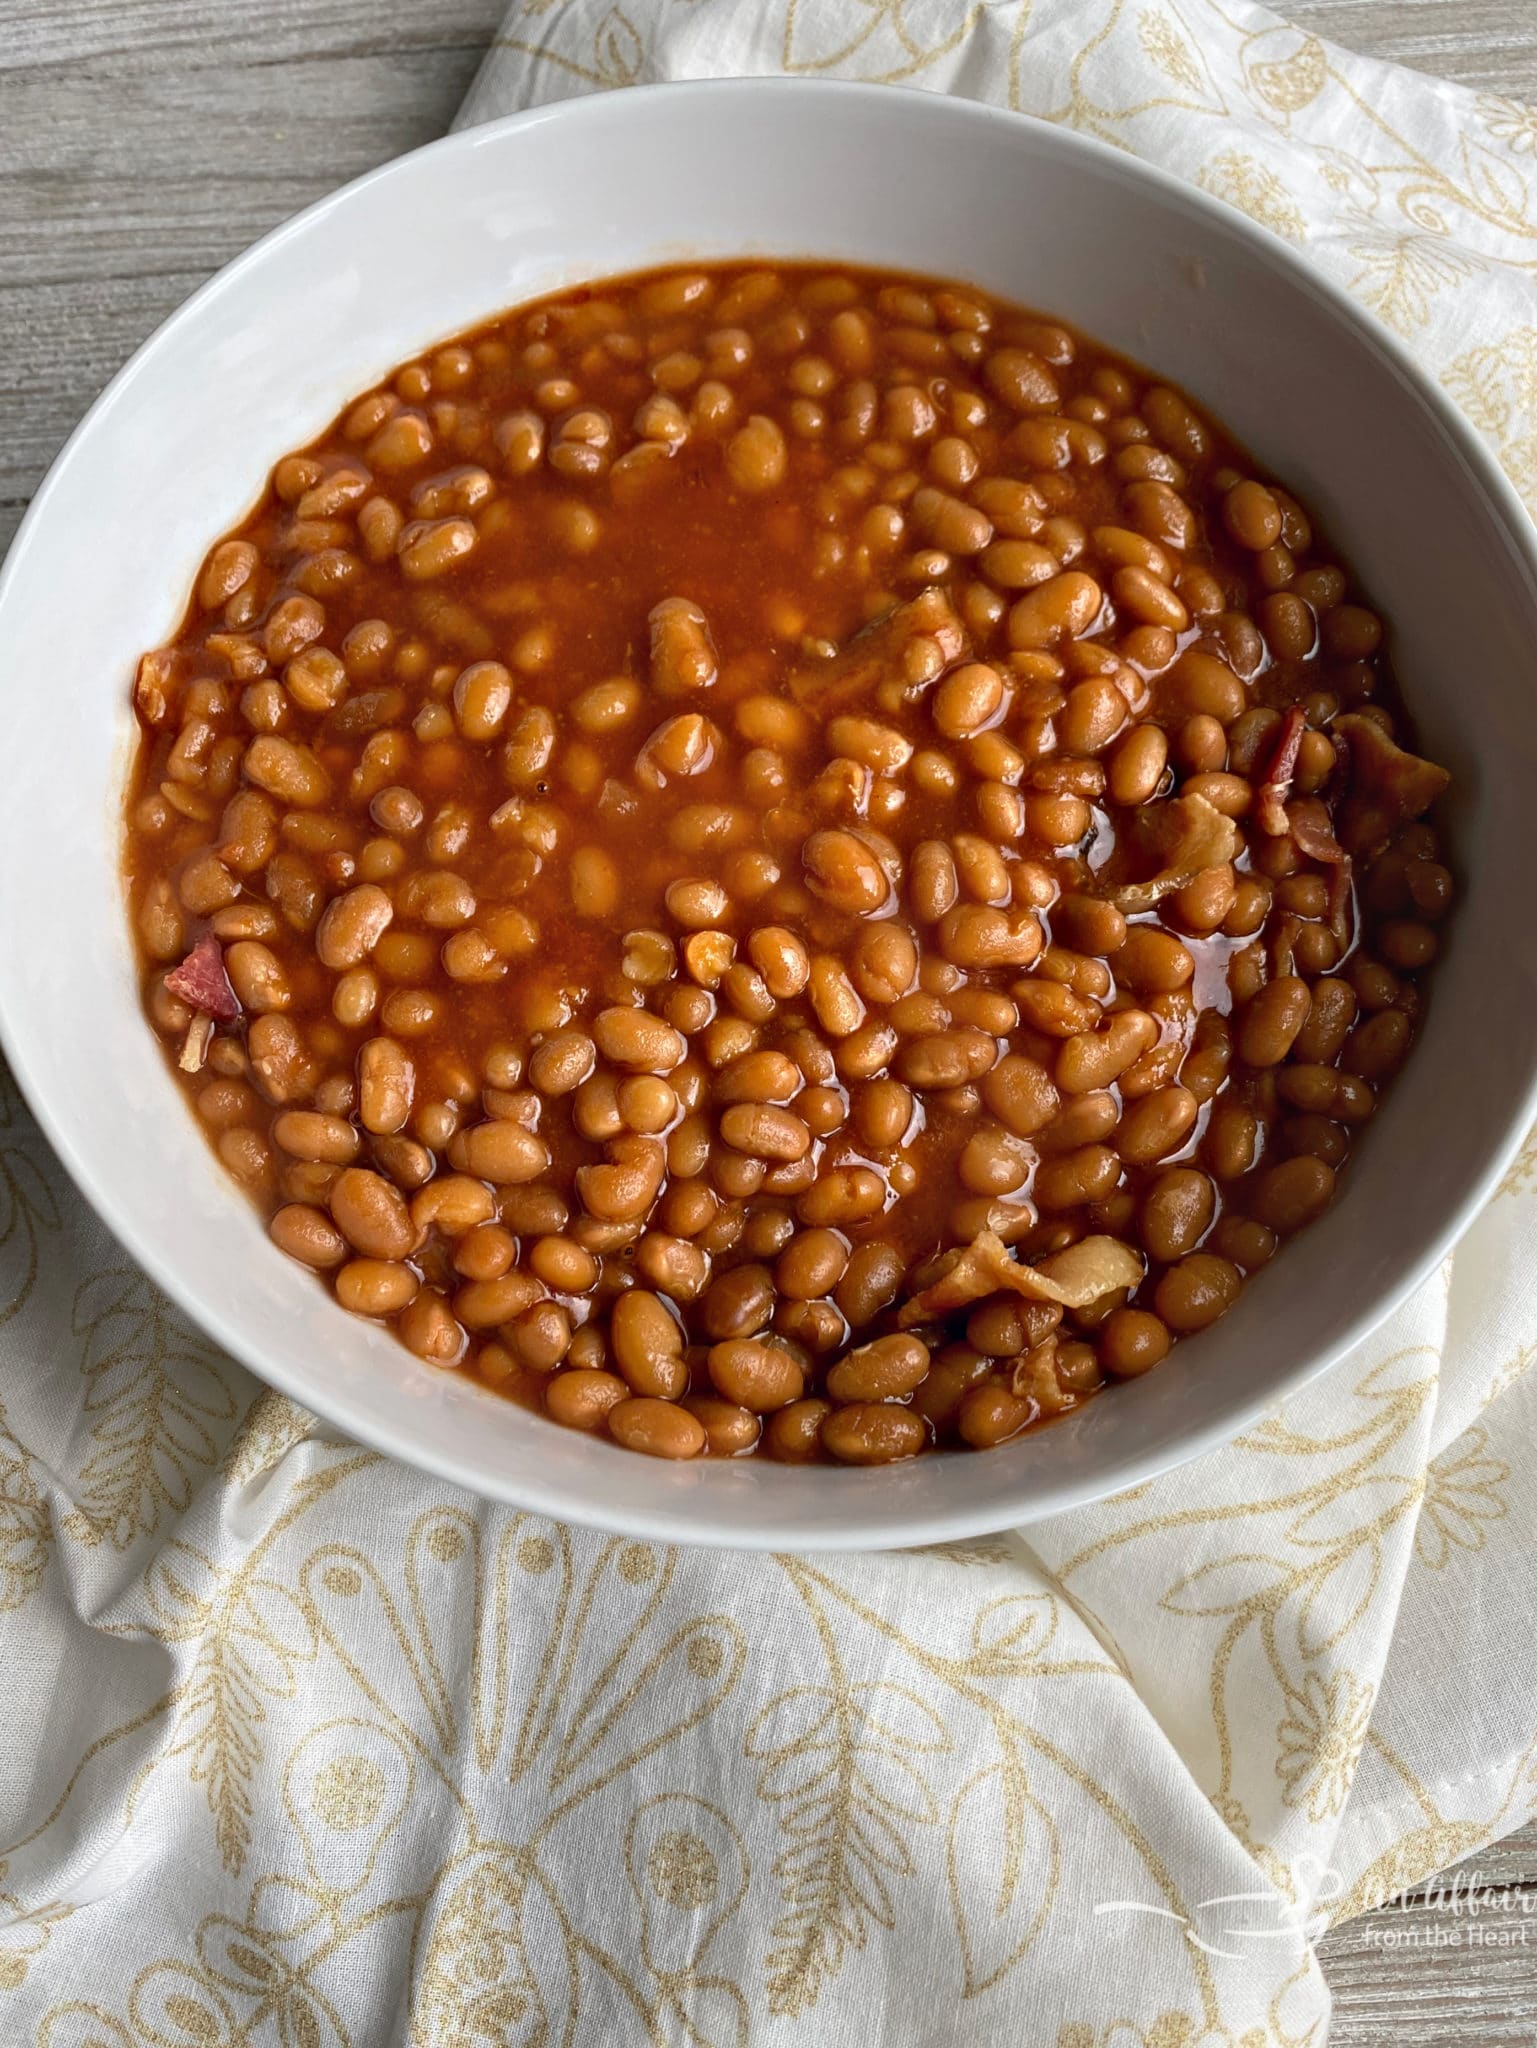 Grandma's Baked Beans - Easy Baked Beans Recipe